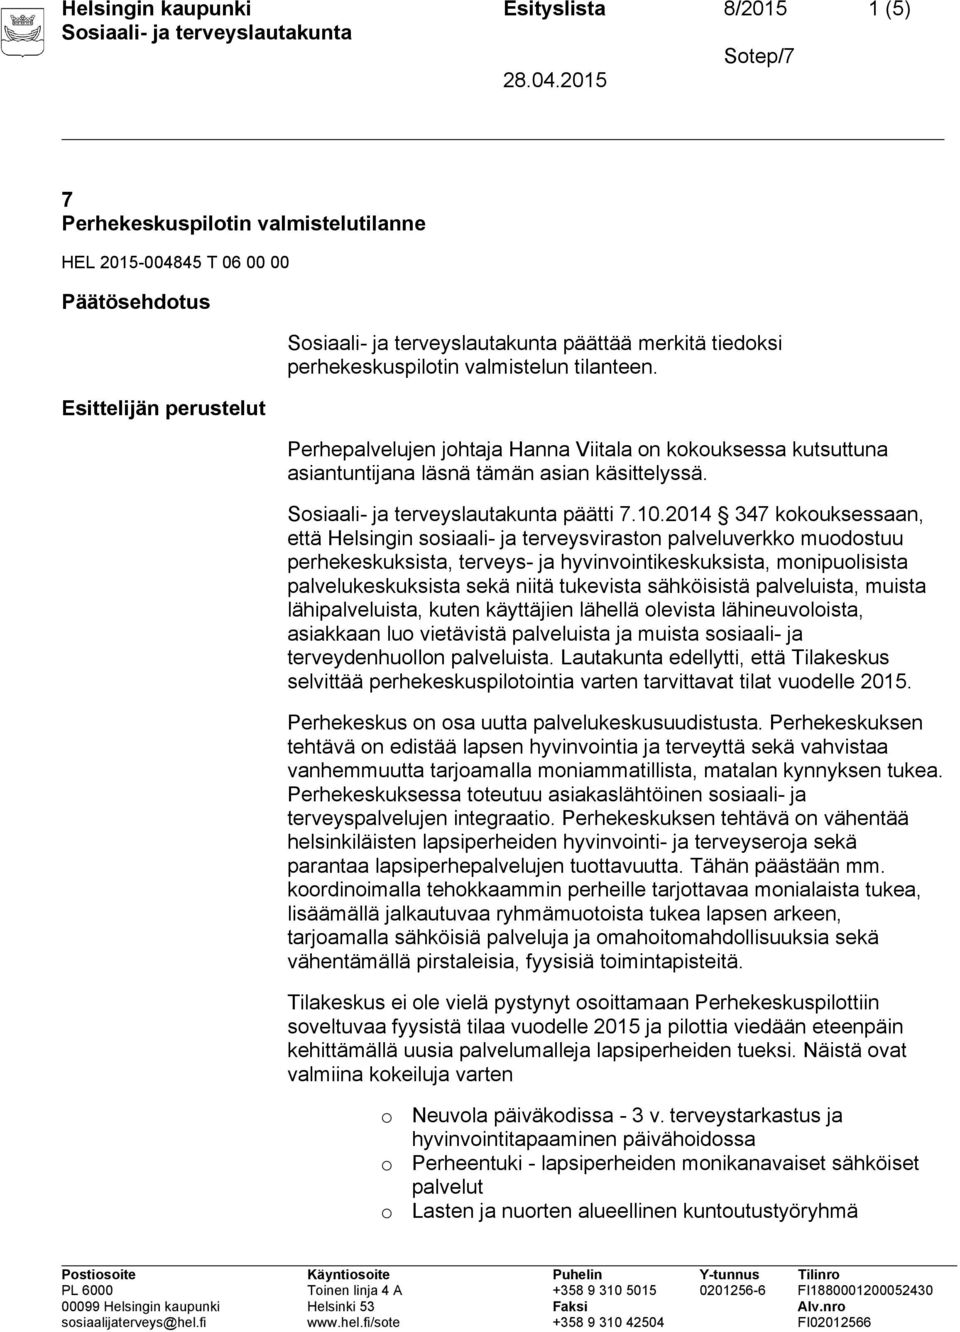 2014 347 kkuksessaan, että Helsingin ssiaali- ja terveysvirastn palveluverkk mudstuu perhekeskuksista, terveys- ja hyvinvintikeskuksista, mnipulisista palvelukeskuksista sekä niitä tukevista